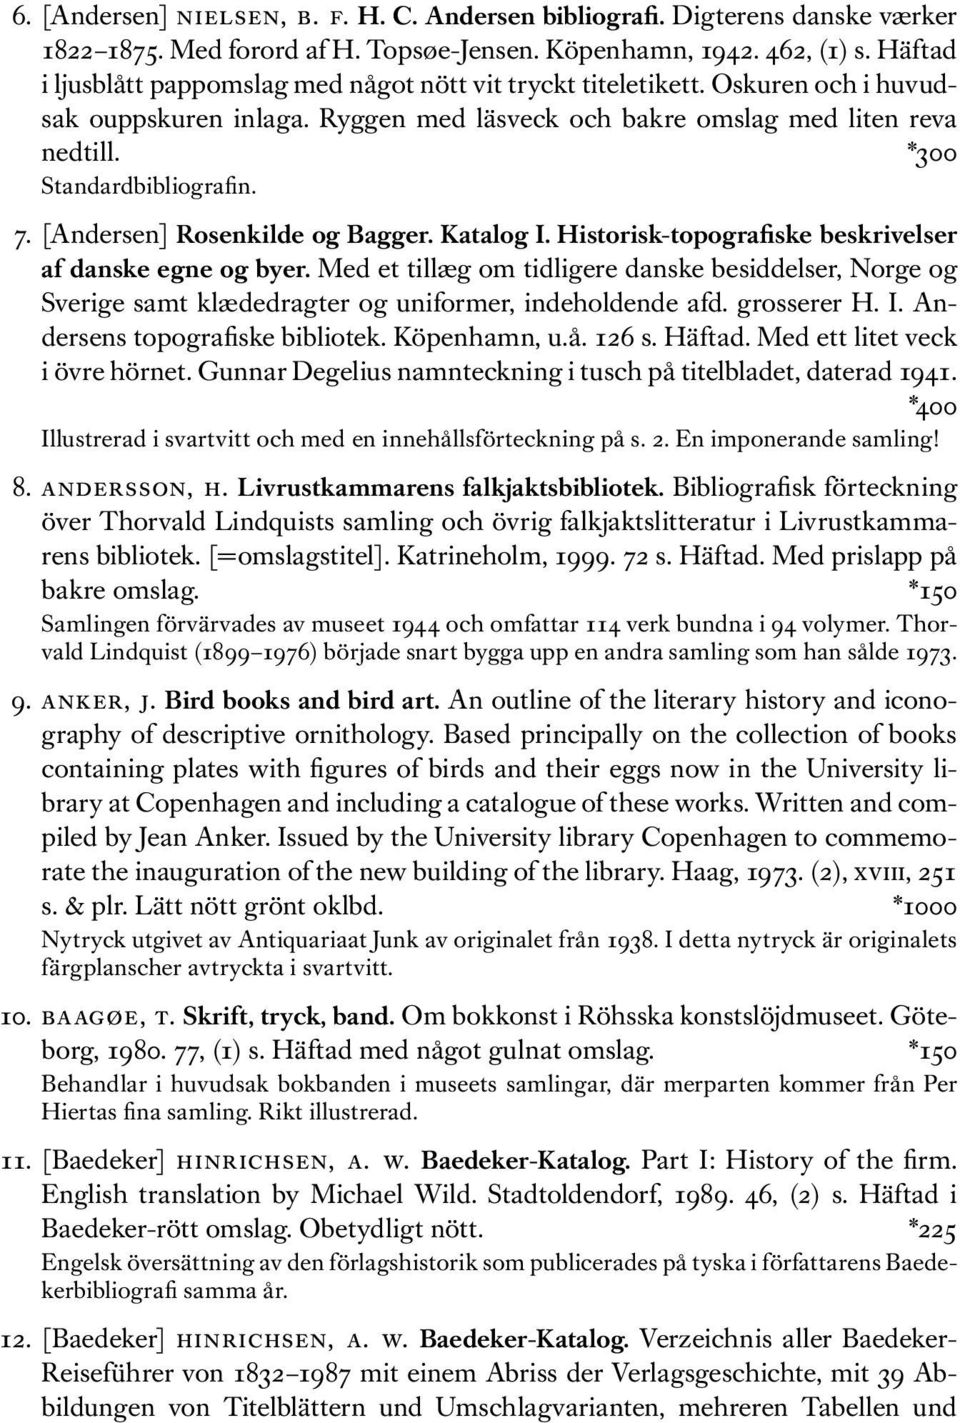 7. [Andersen] Rosenkilde og Bagger. Katalog I. Historisk-topografiske beskrivelser af danske egne og byer.